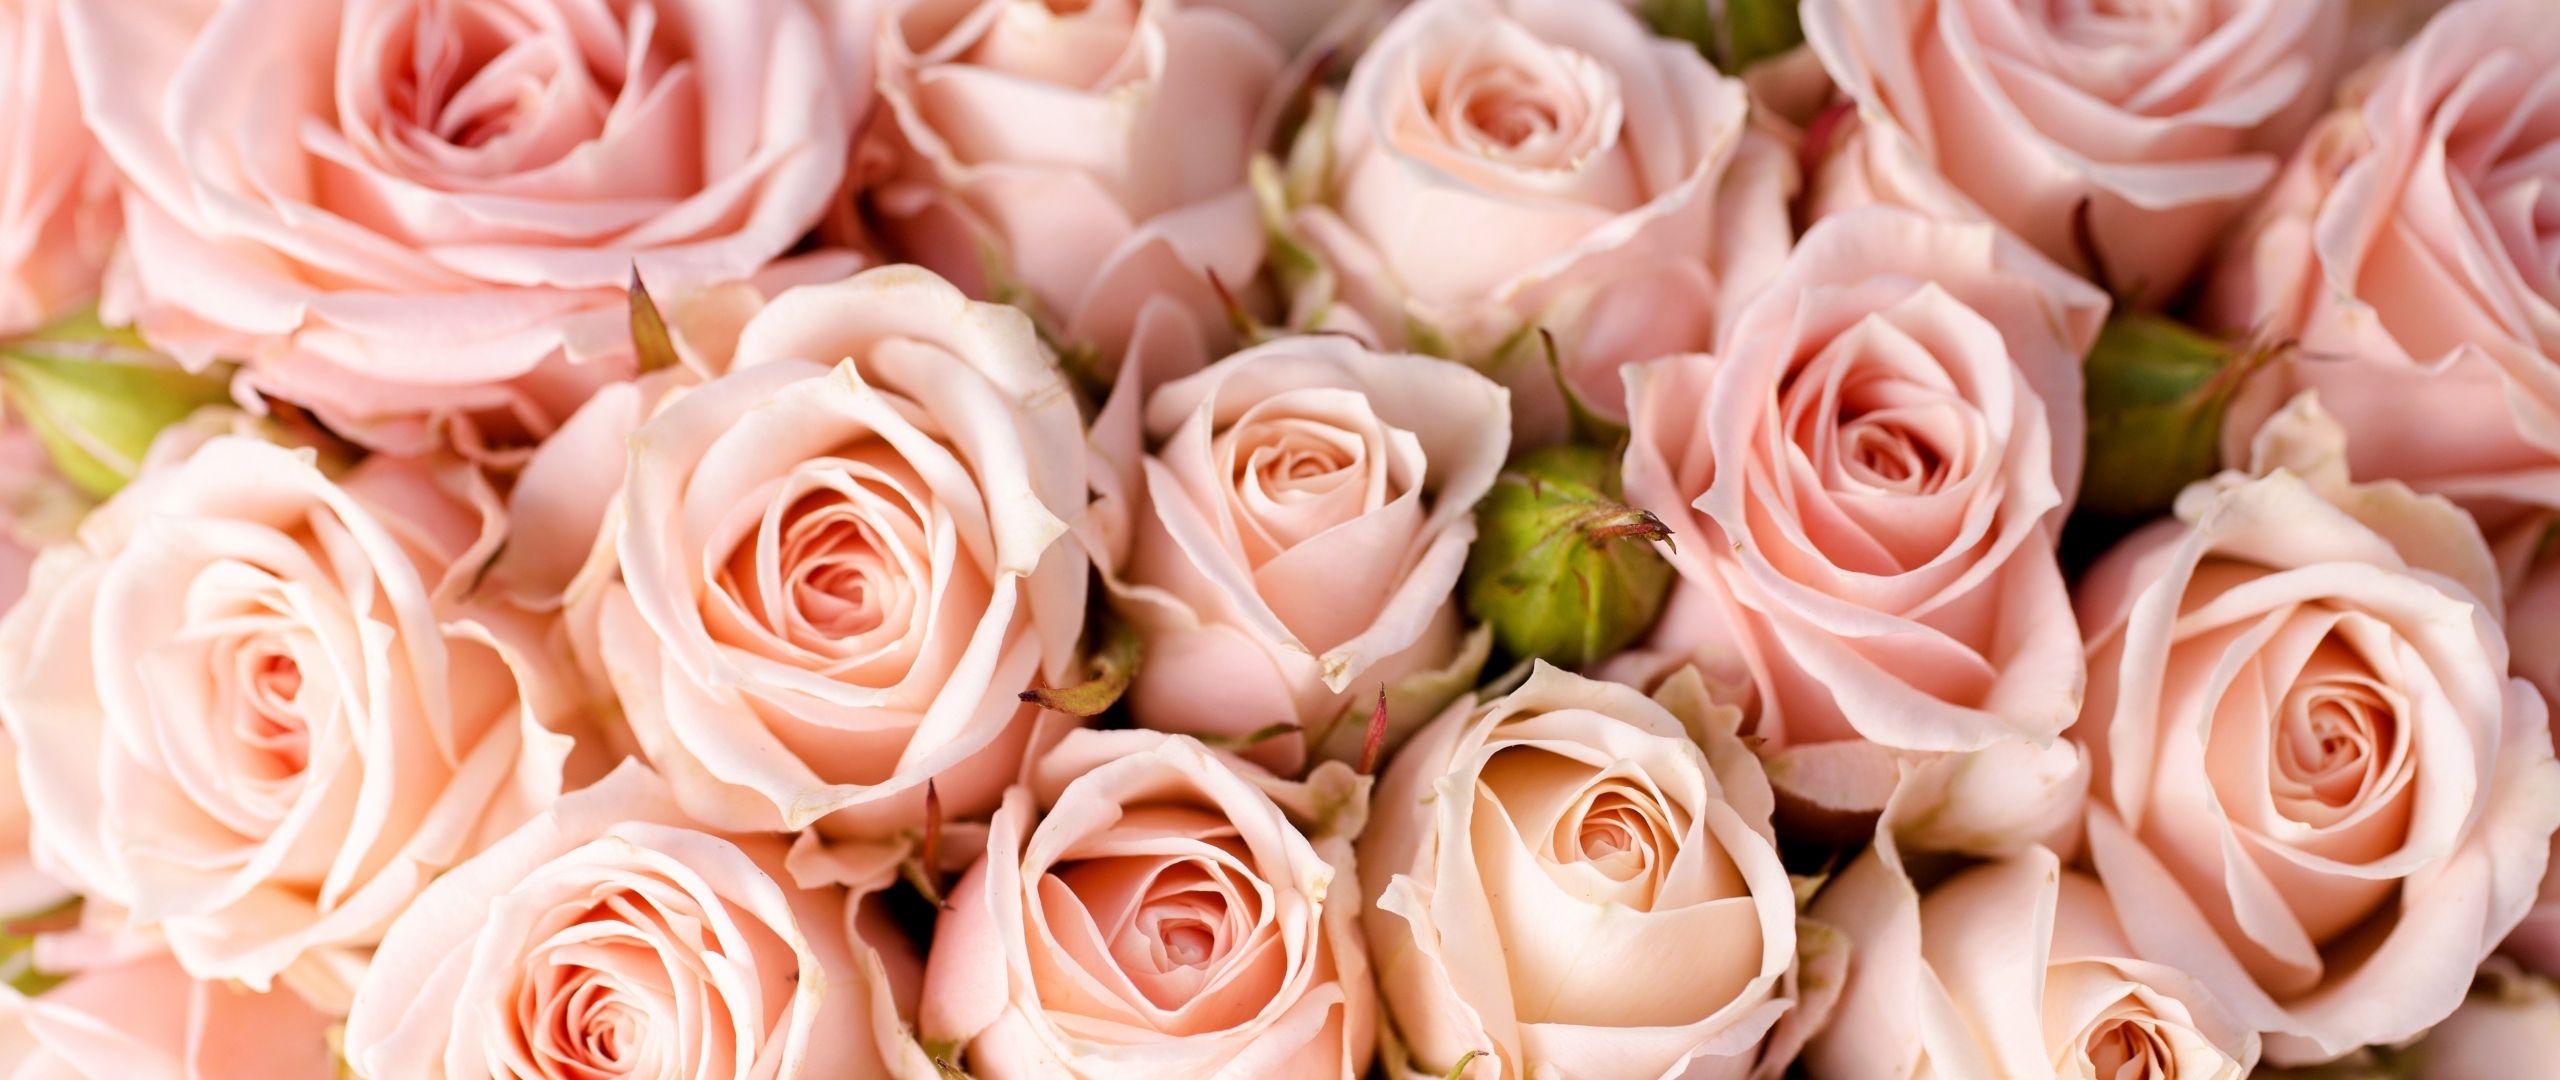 Download Roses, 5k, 4k wallpaper, 8k, flowers, pink Dual